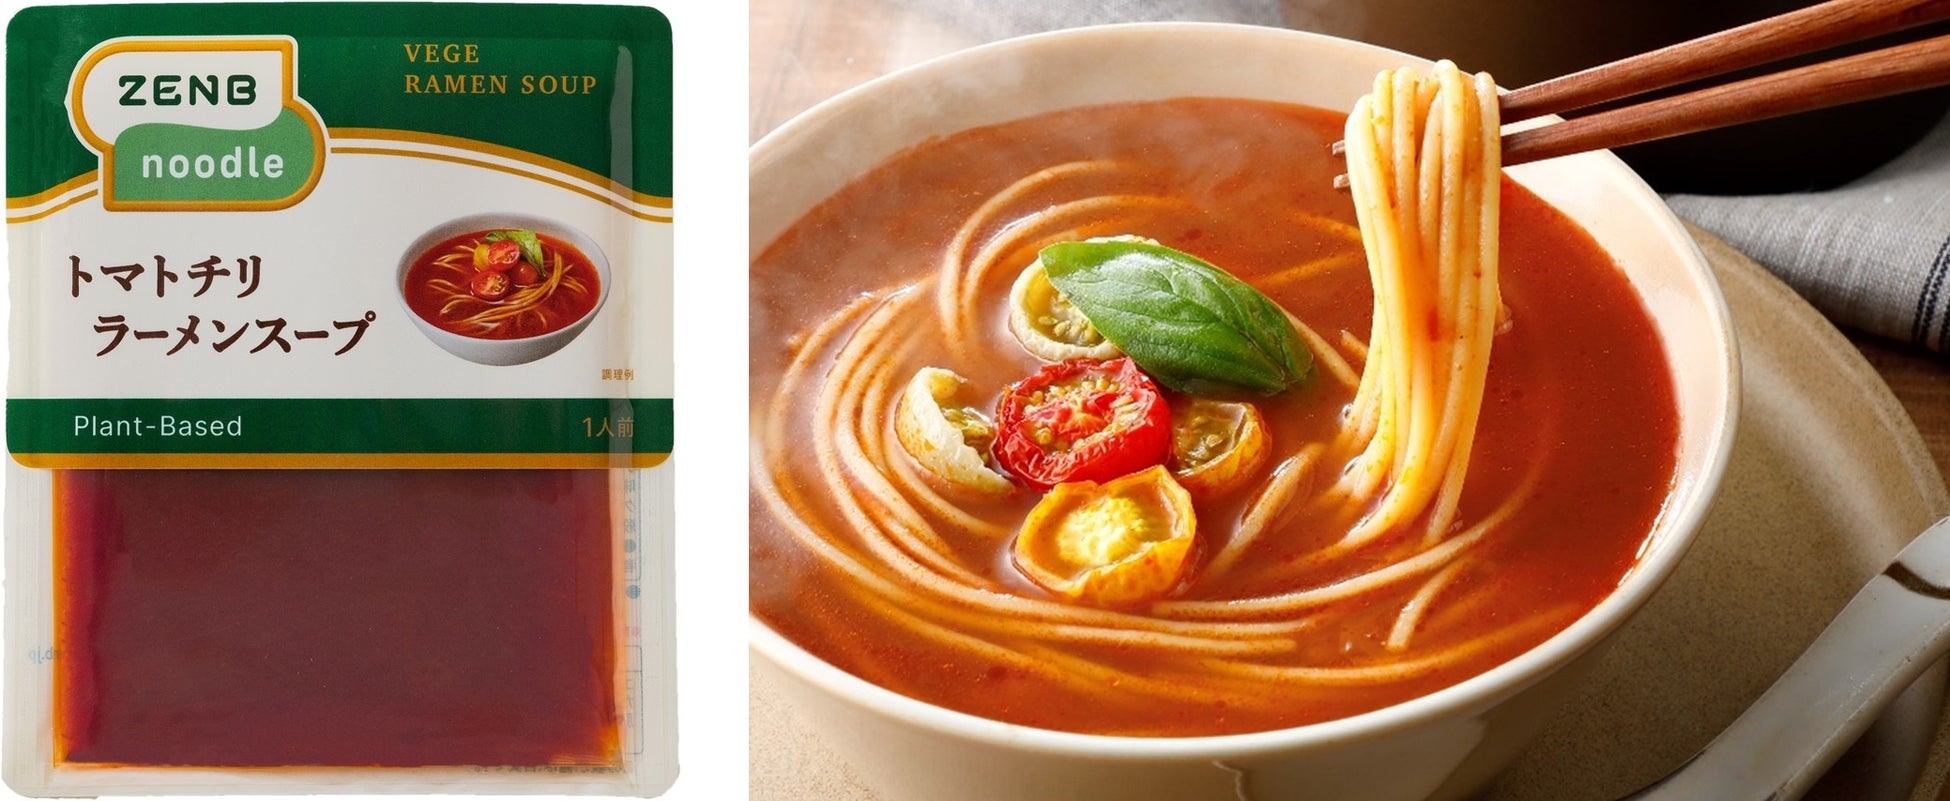 「ZENBヌードル」をゆで汁までおいしく楽しむ”罪なきラーメン”「ZENBベジラーメンスープ」6種を新発売のサブ画像8